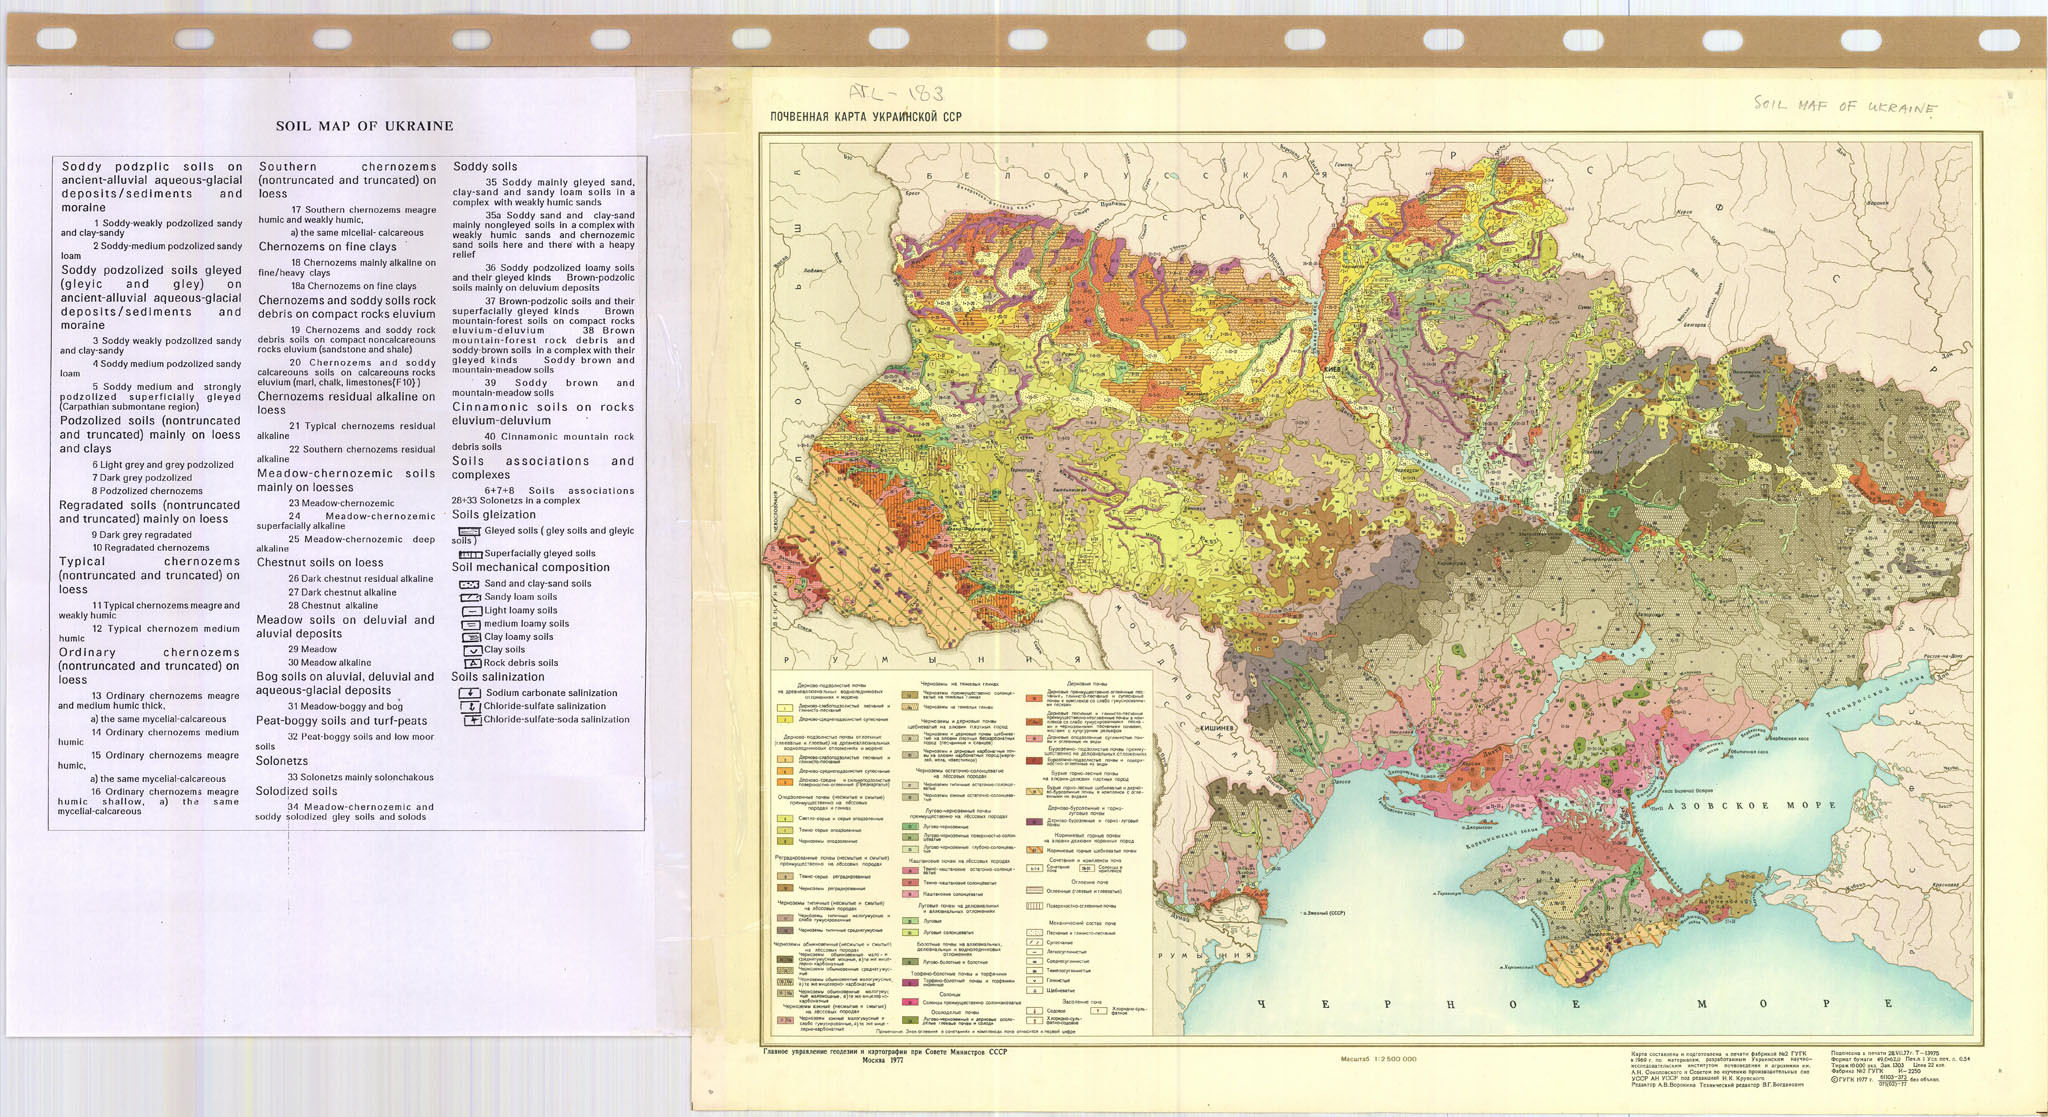 Карта почв Украины, 1977 (источник: https://esdac.jrc.ec.europa.eu/content/title-russia-soil-map-ukraine)